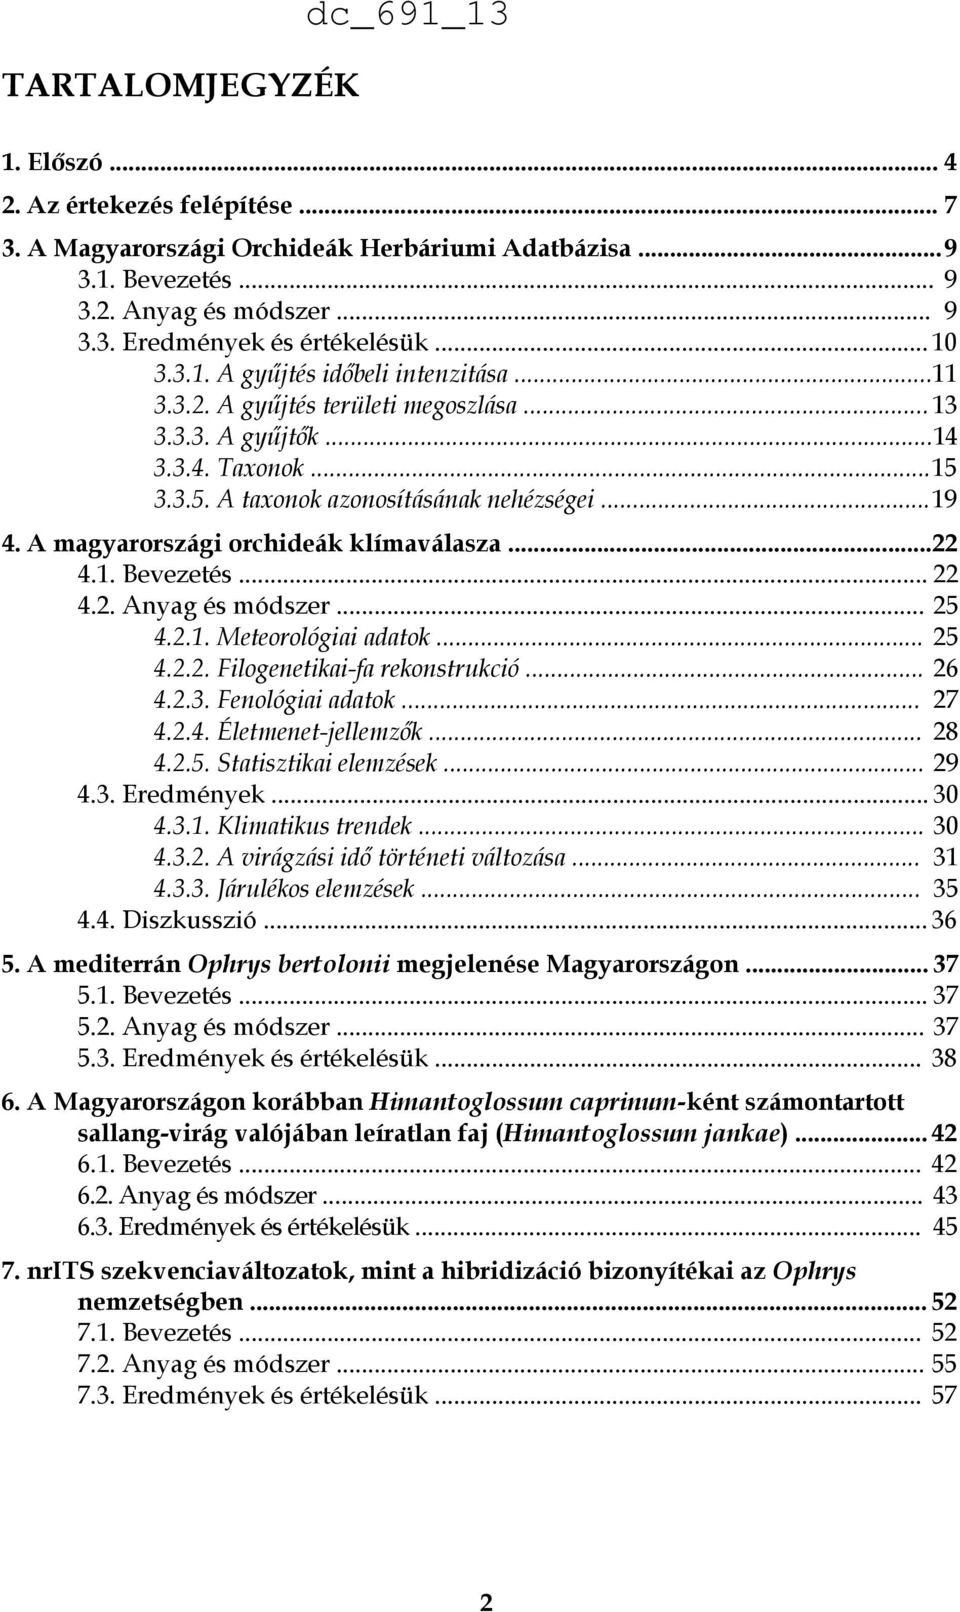 A magyarországi orchideák klímaválasza...22 4.1. Bevezetés... 22 4.2. Anyag és módszer... 25 4.2.1. Meteorológiai adatok... 25 4.2.2. Filogenetikai-fa rekonstrukció... 26 4.2.3. Fenológiai adatok.